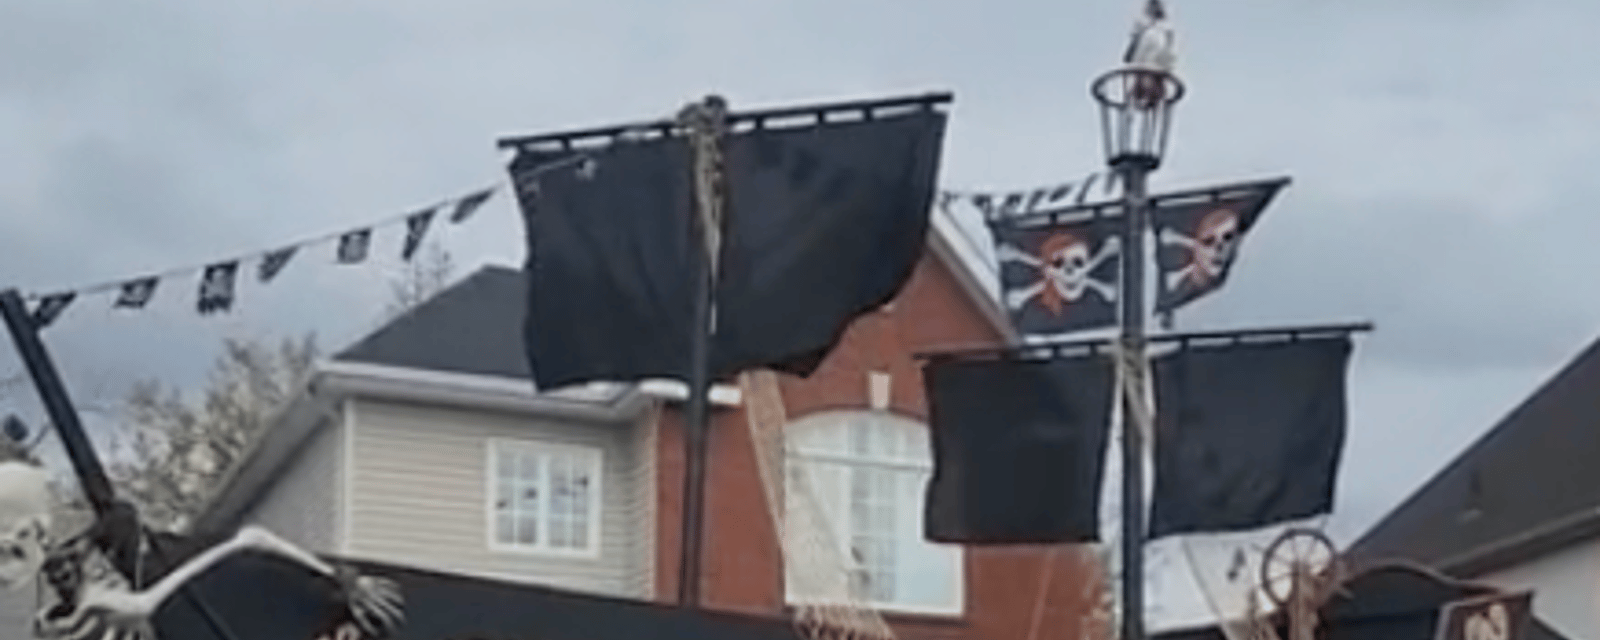 Un Québécois a construit un méga bateau de pirates devant sa maison pour l'Halloween